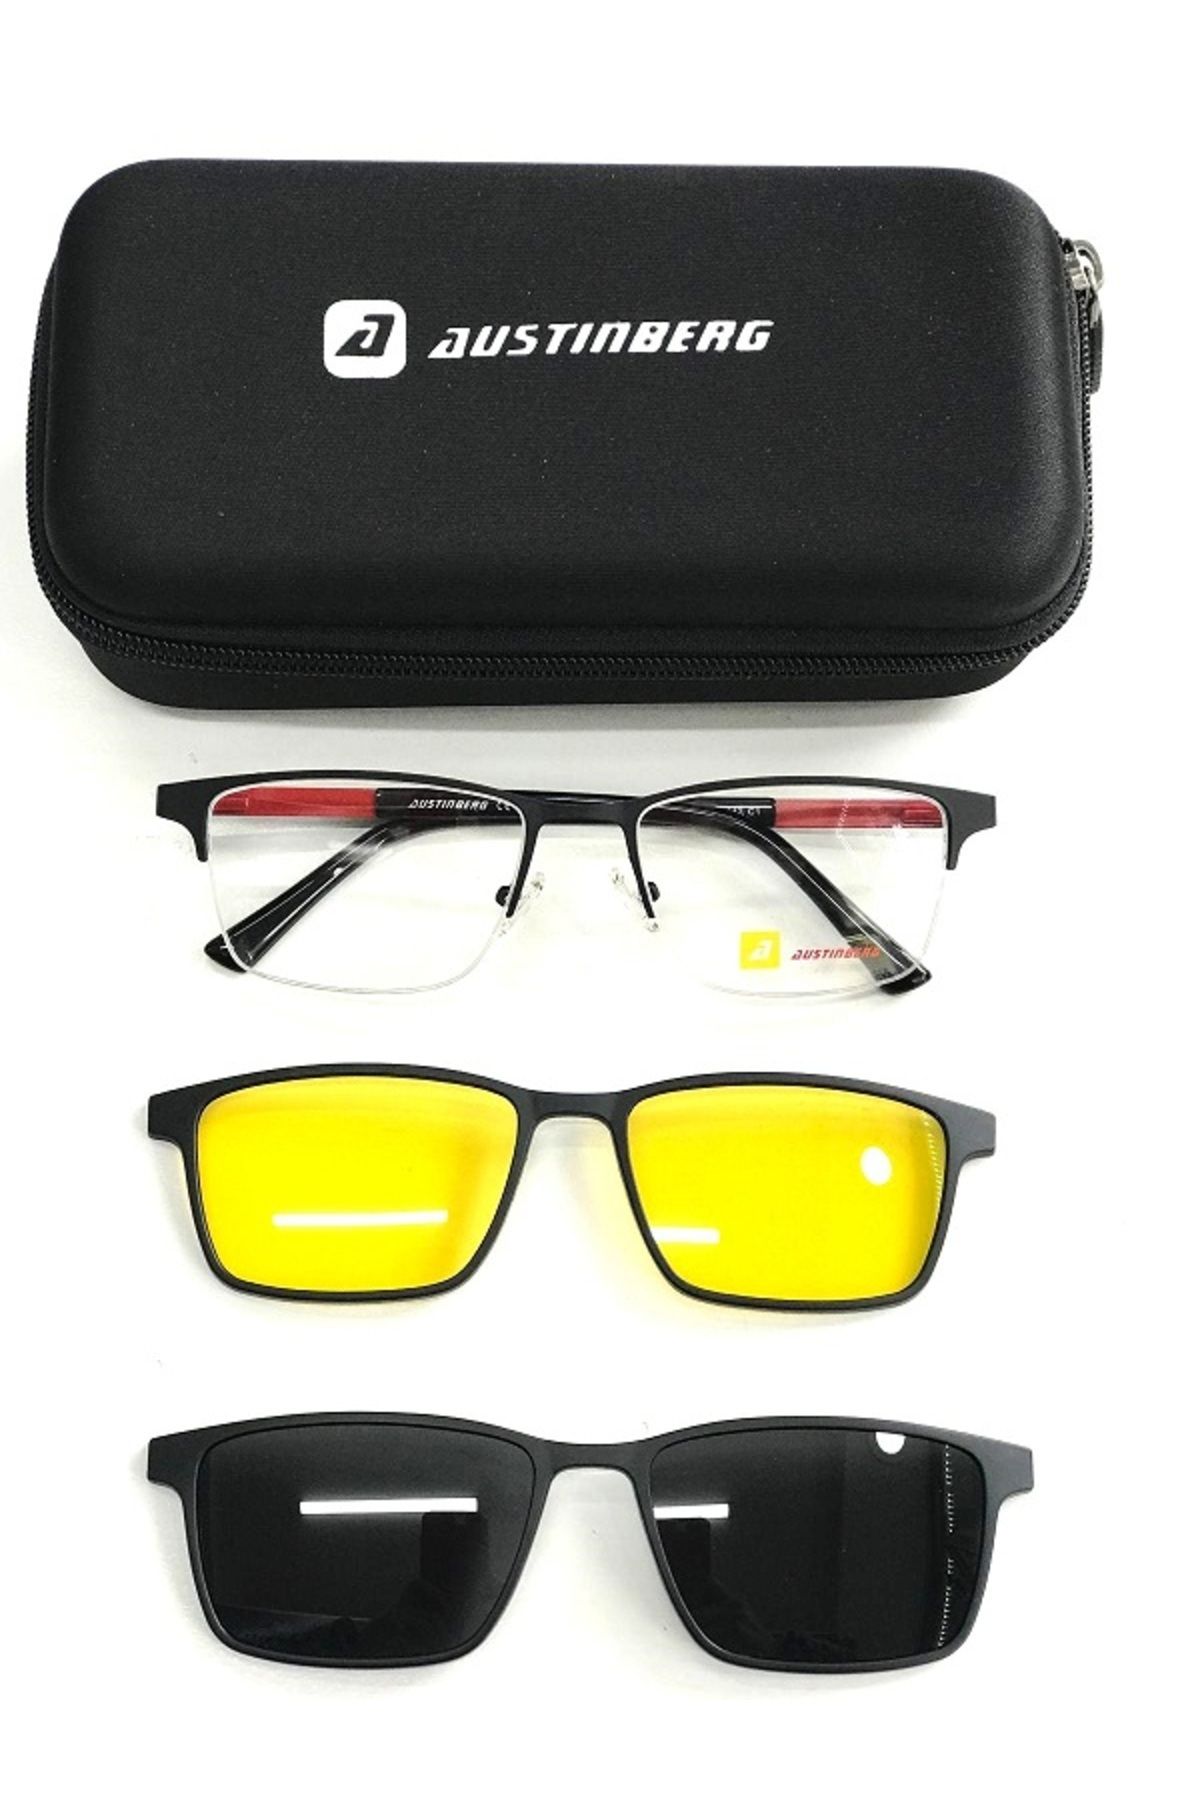 austinberg AUSTİNBERG 9023 c1 polarize & antifar klipsli unisex güneş gözlüğü